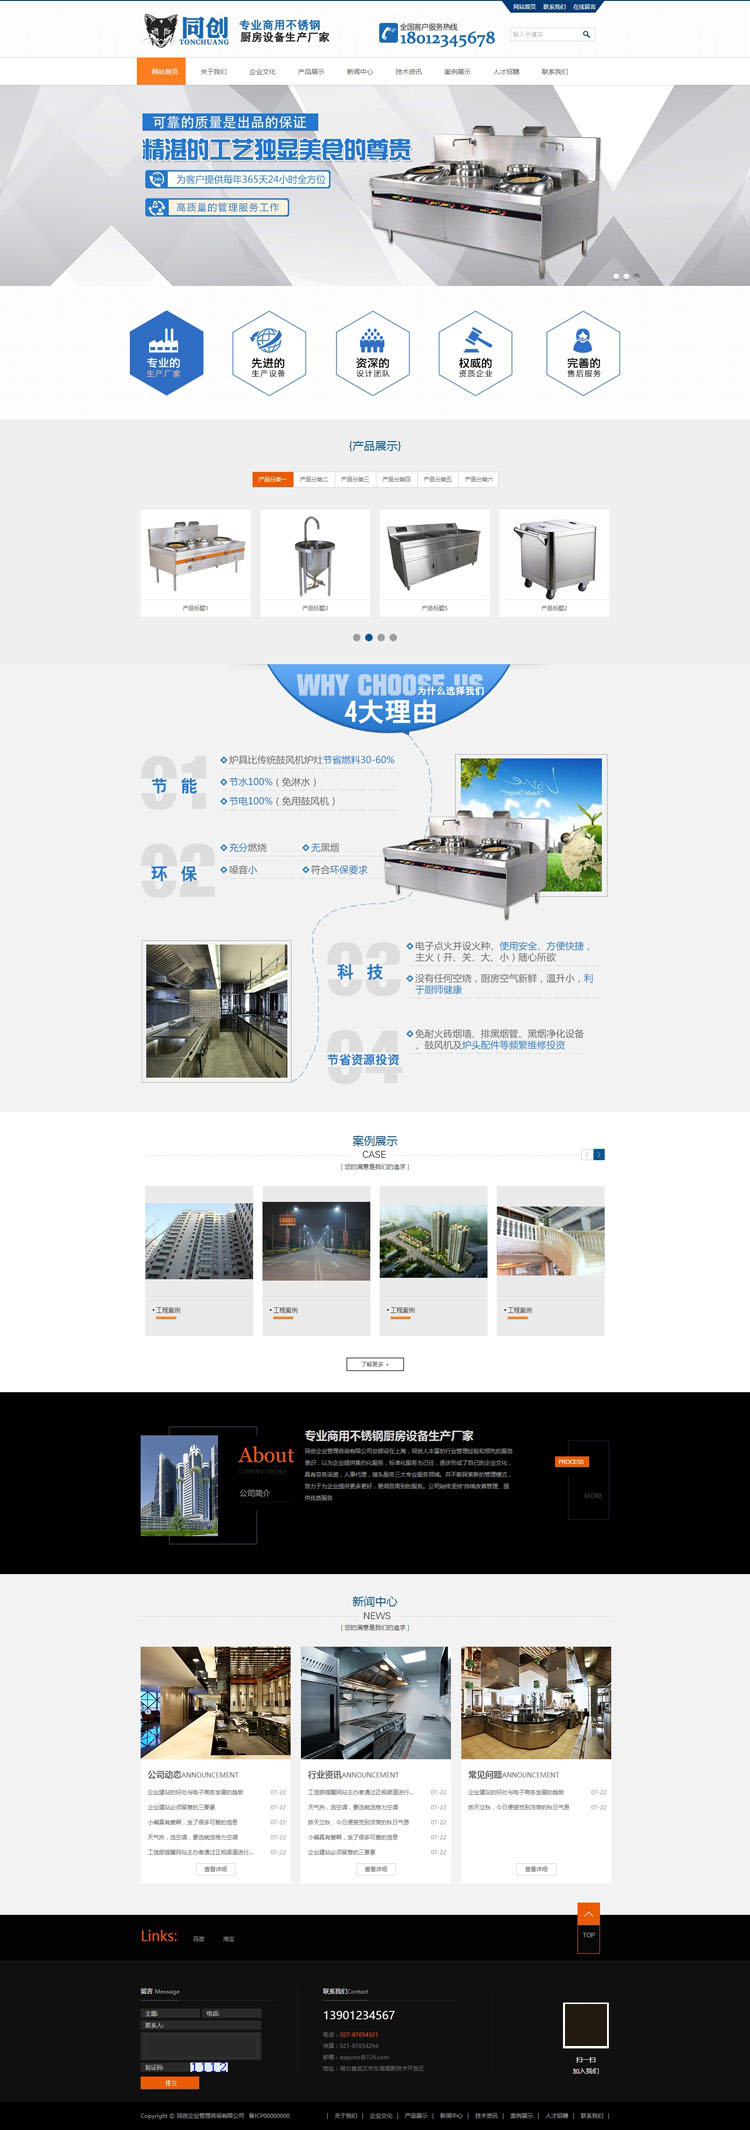 营销型厨房设备网站源码程序-TC035-2